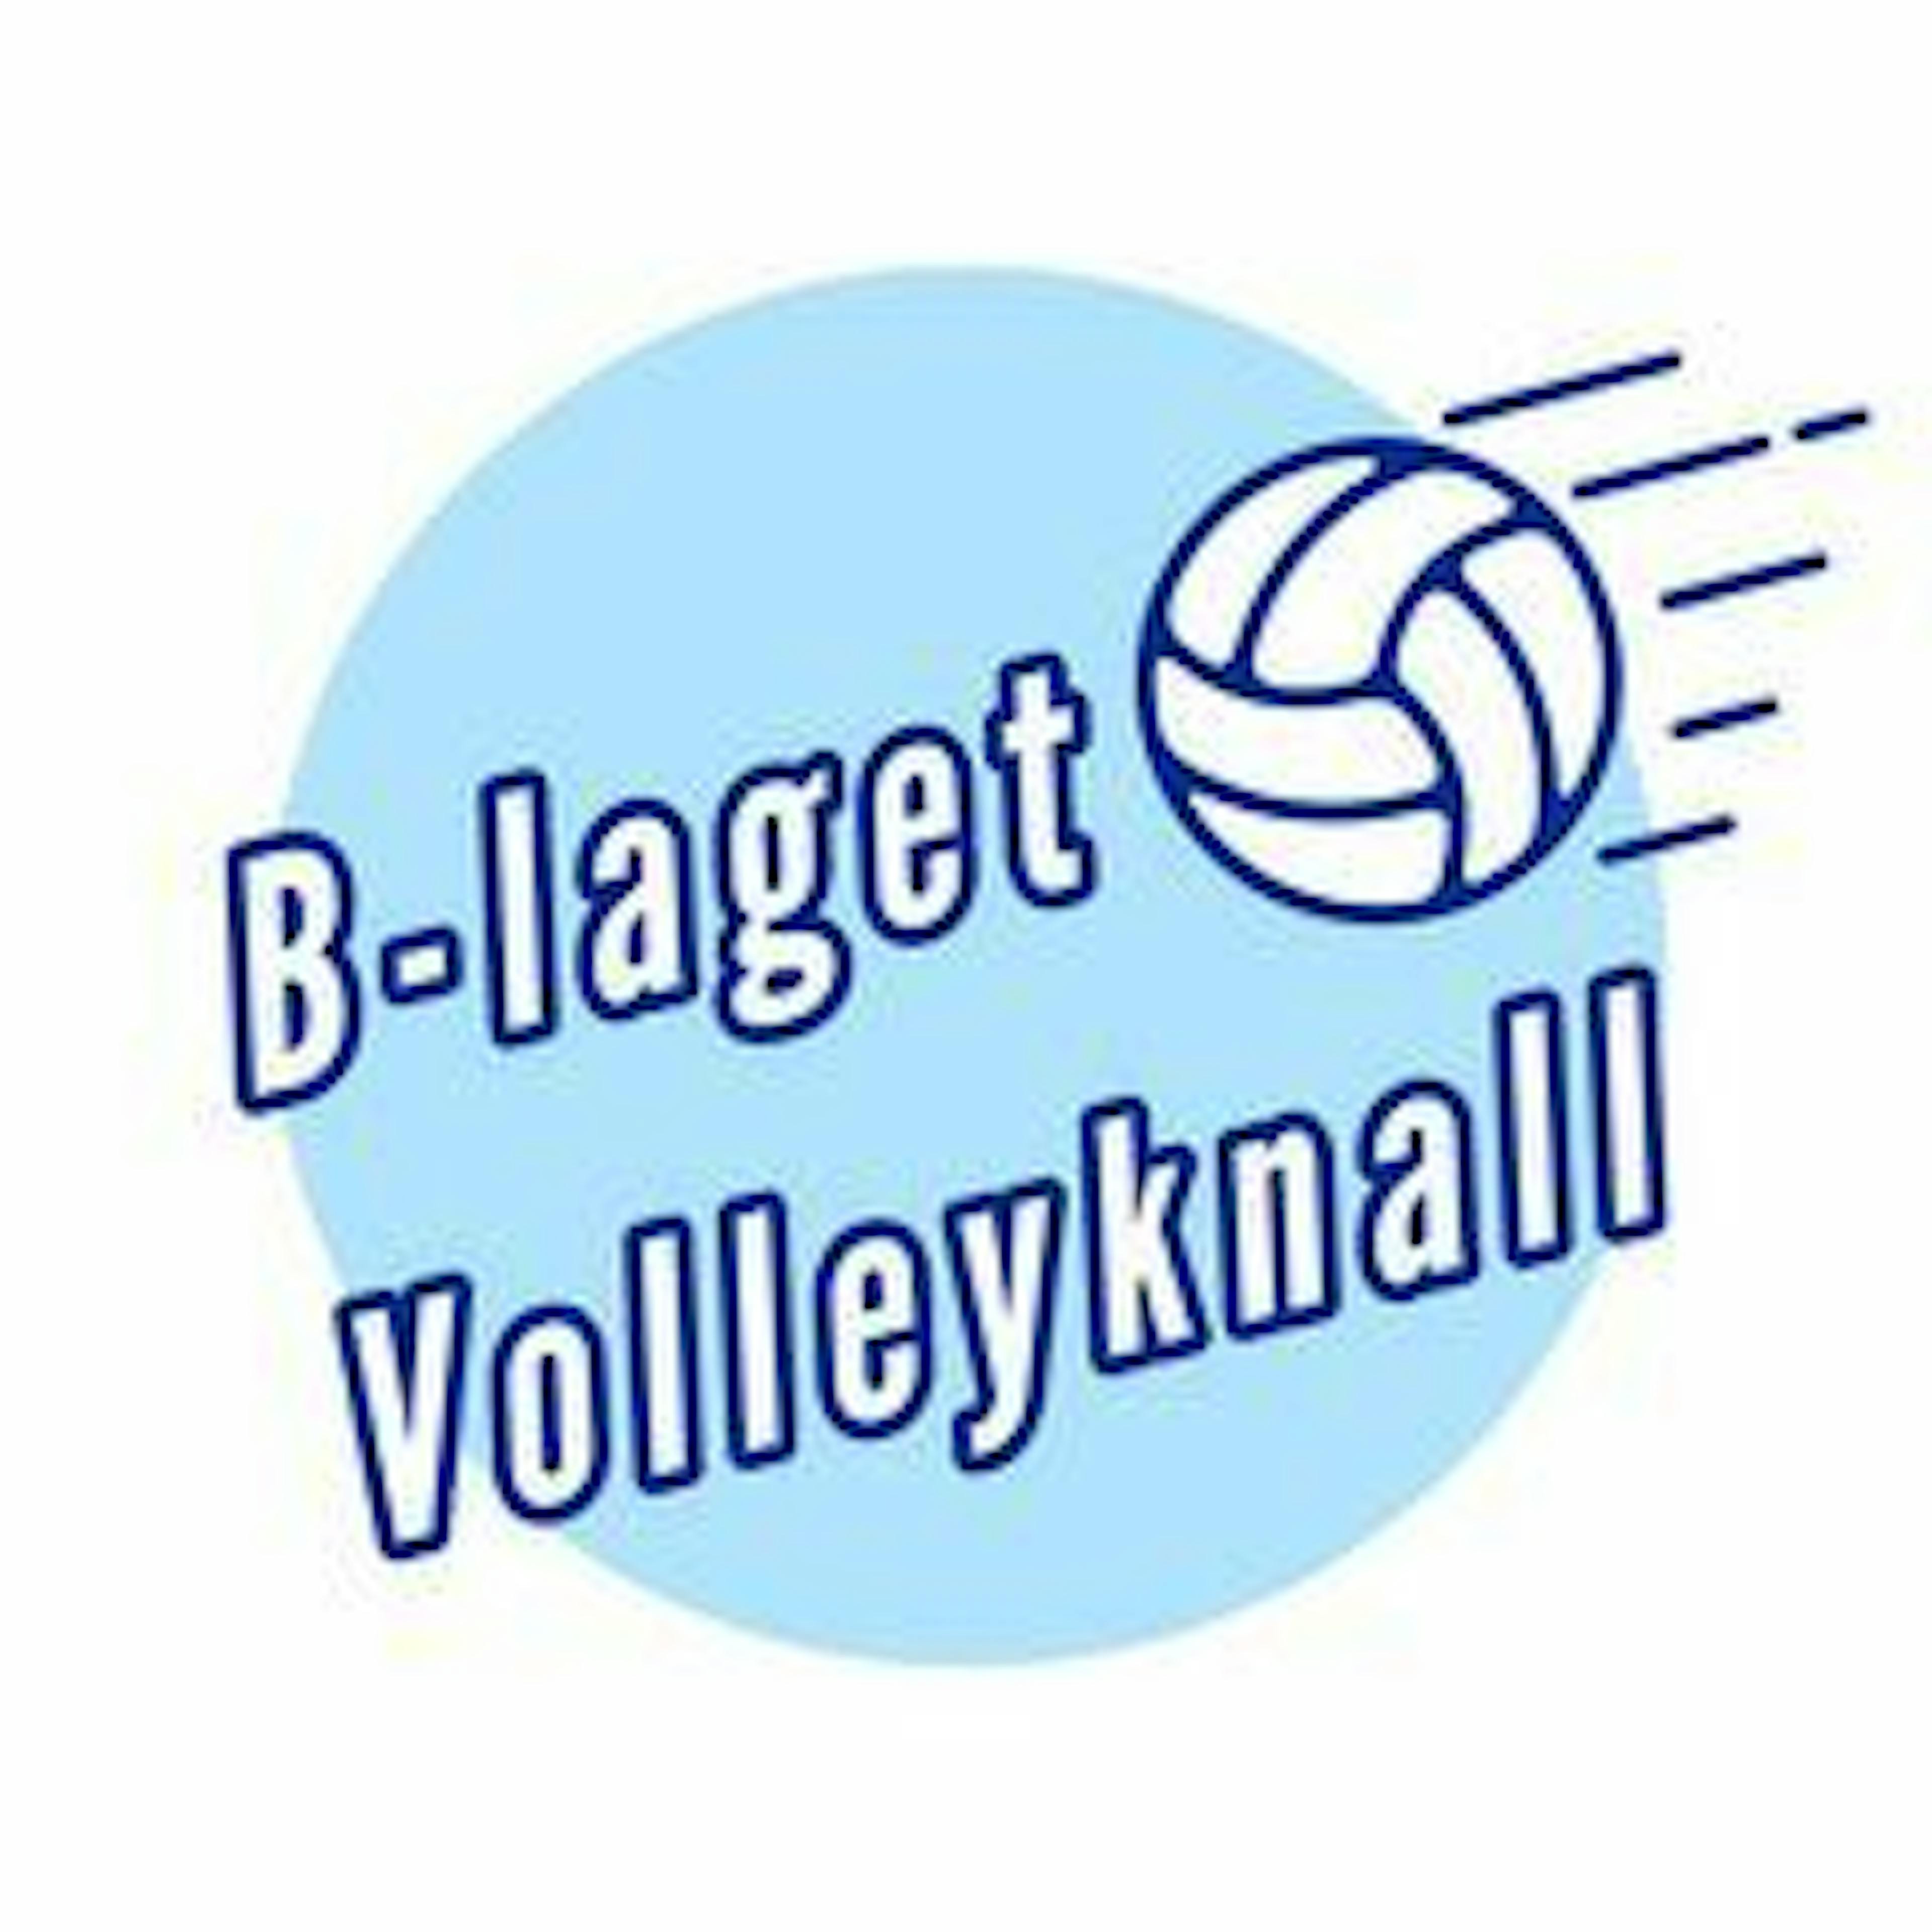 Volleyknall logo